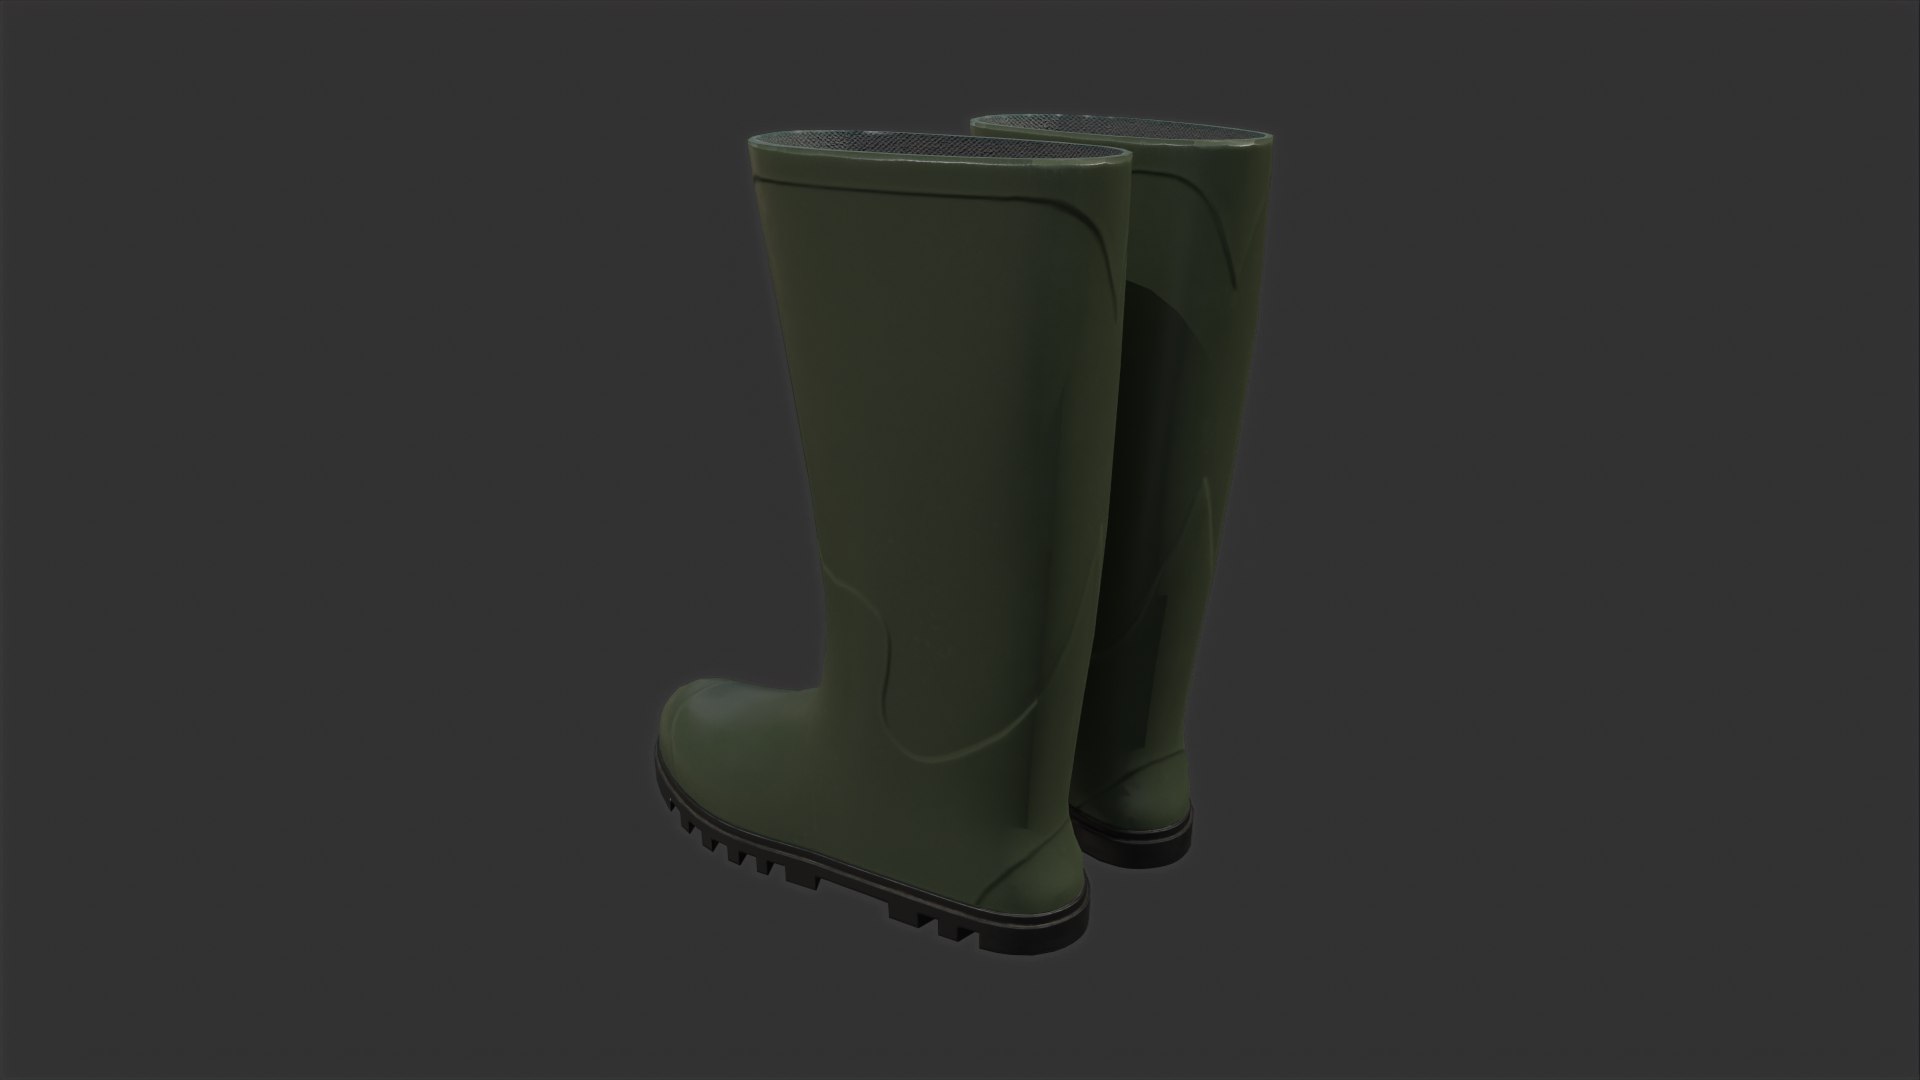 Gardening Boots Game Asset 3D Model - TurboSquid 1883007